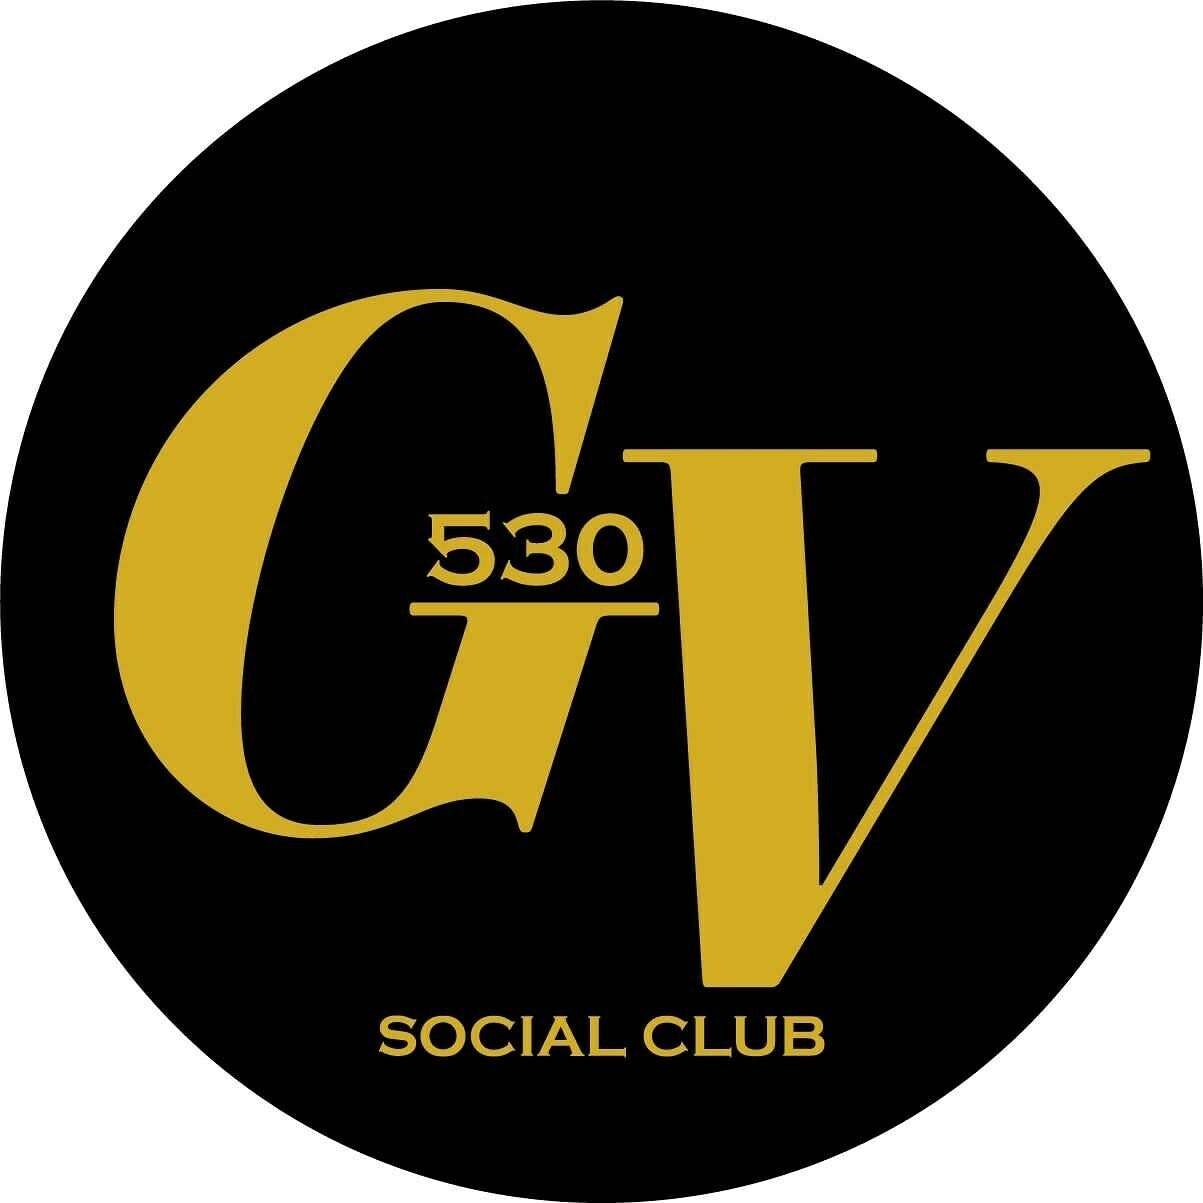 GV530 Cannabis Club